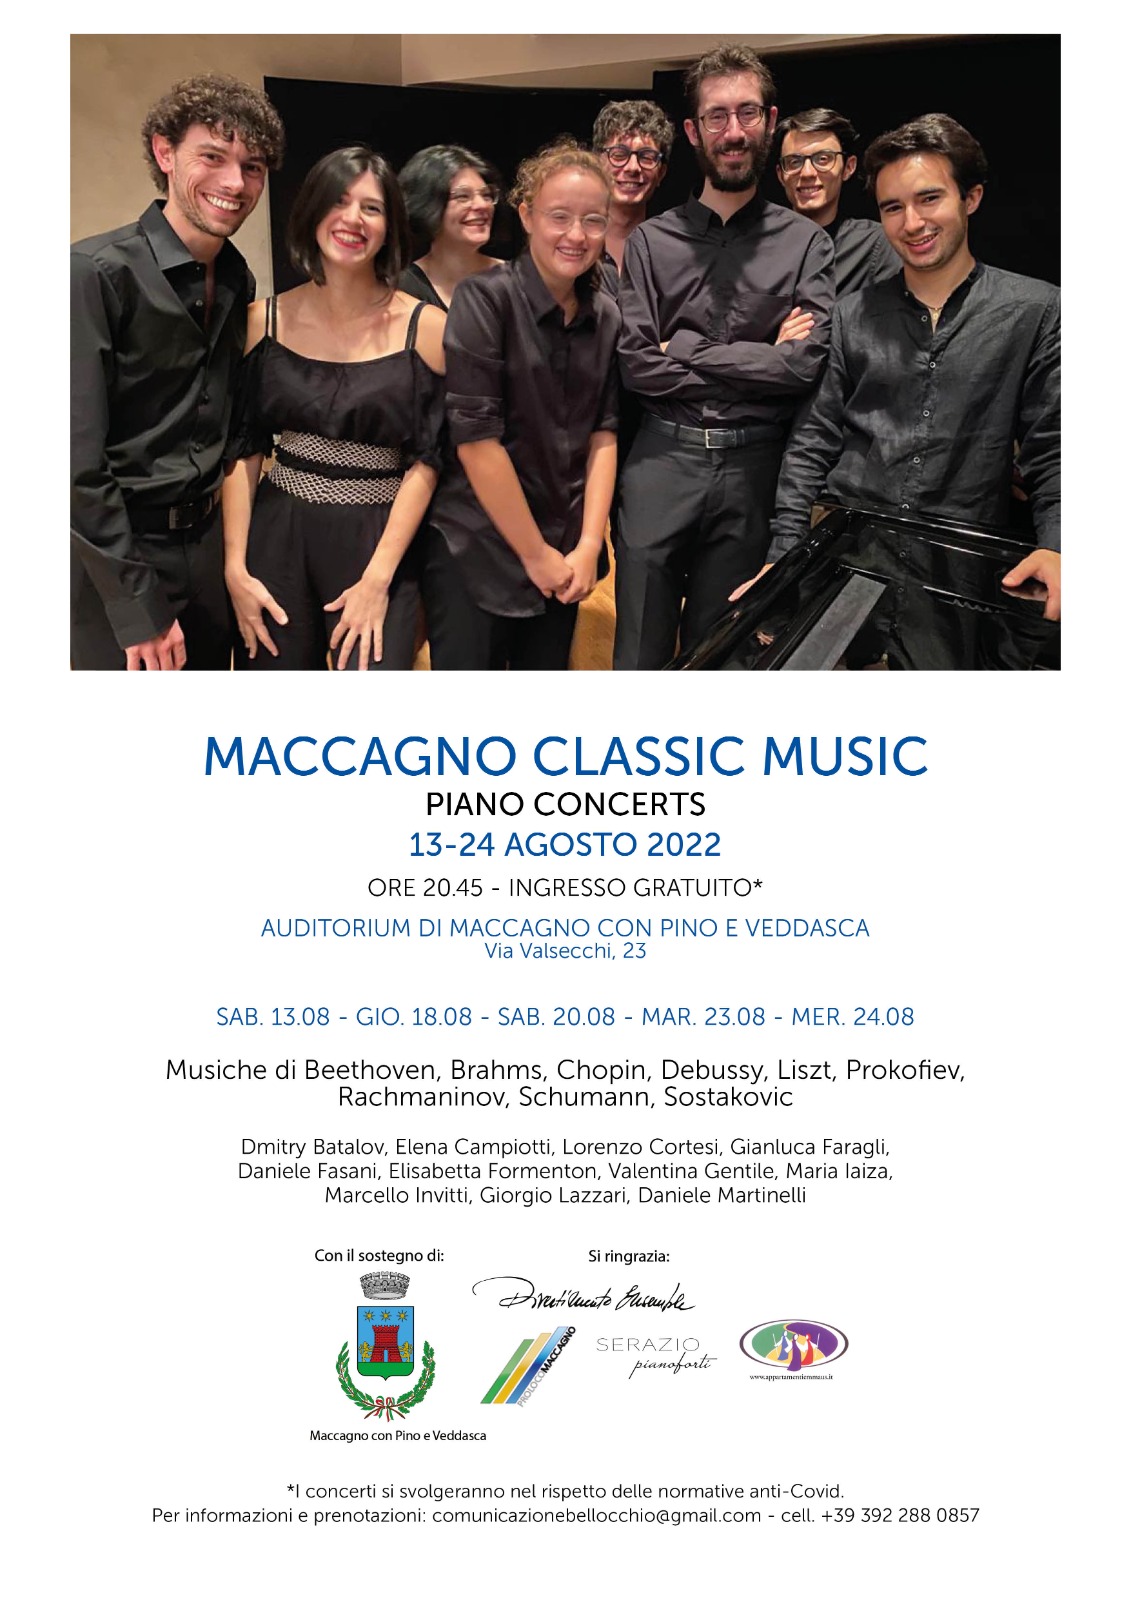 LocMaccagnoClassicMusic22